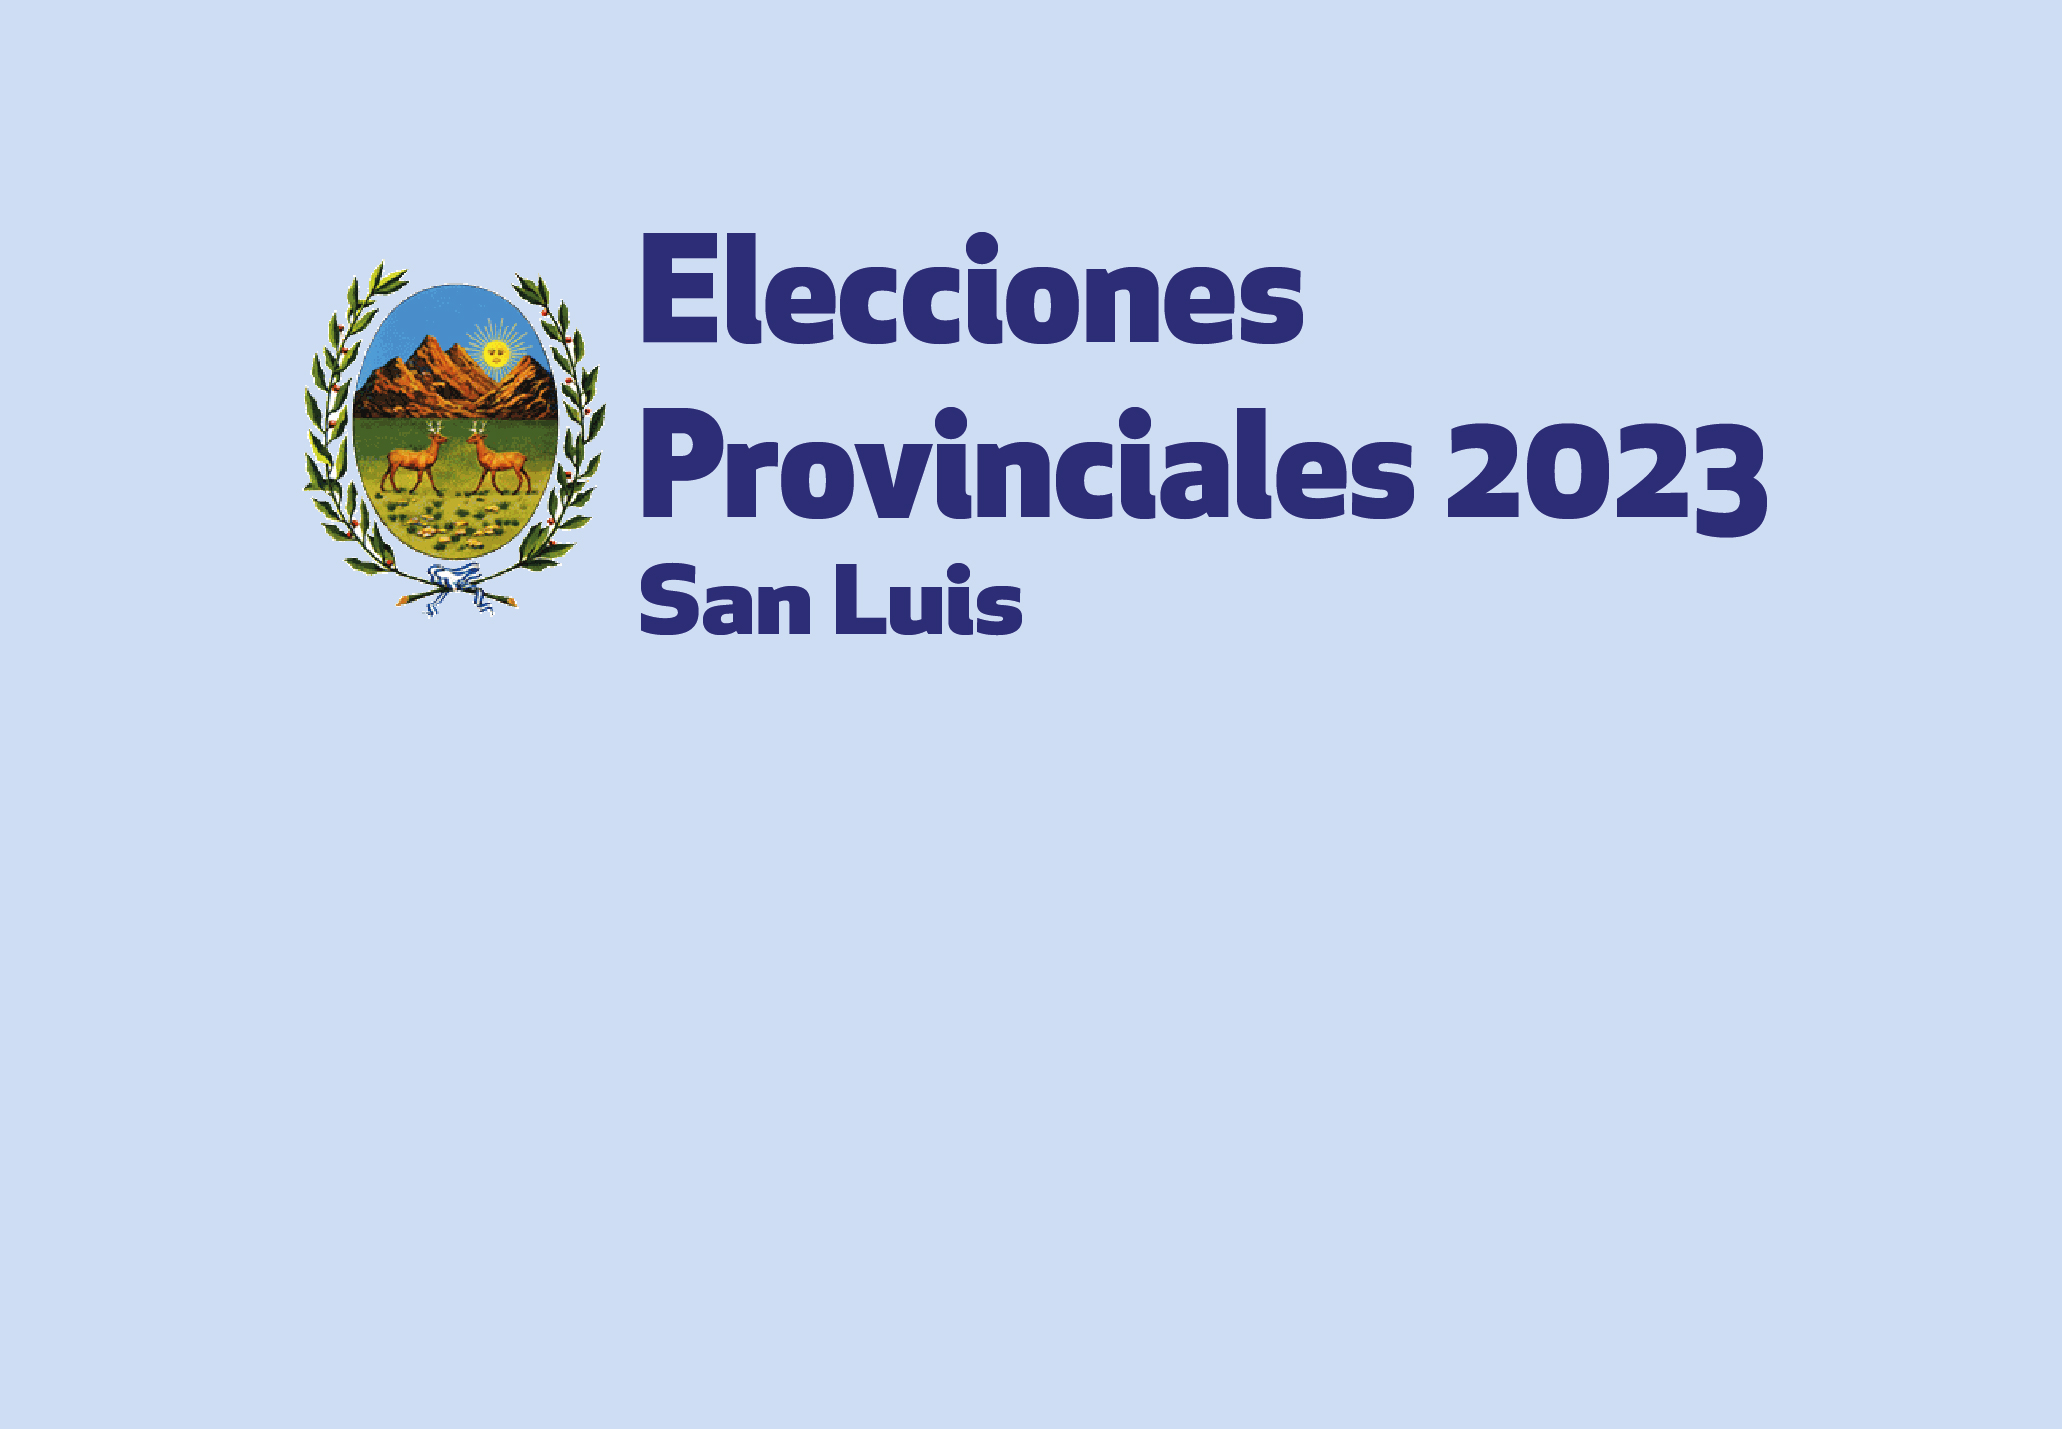 ELECCIONES PROVINCIALES 2023: INFORMACIÓN IMPORTANTE PARA LA CIUDADANÍA